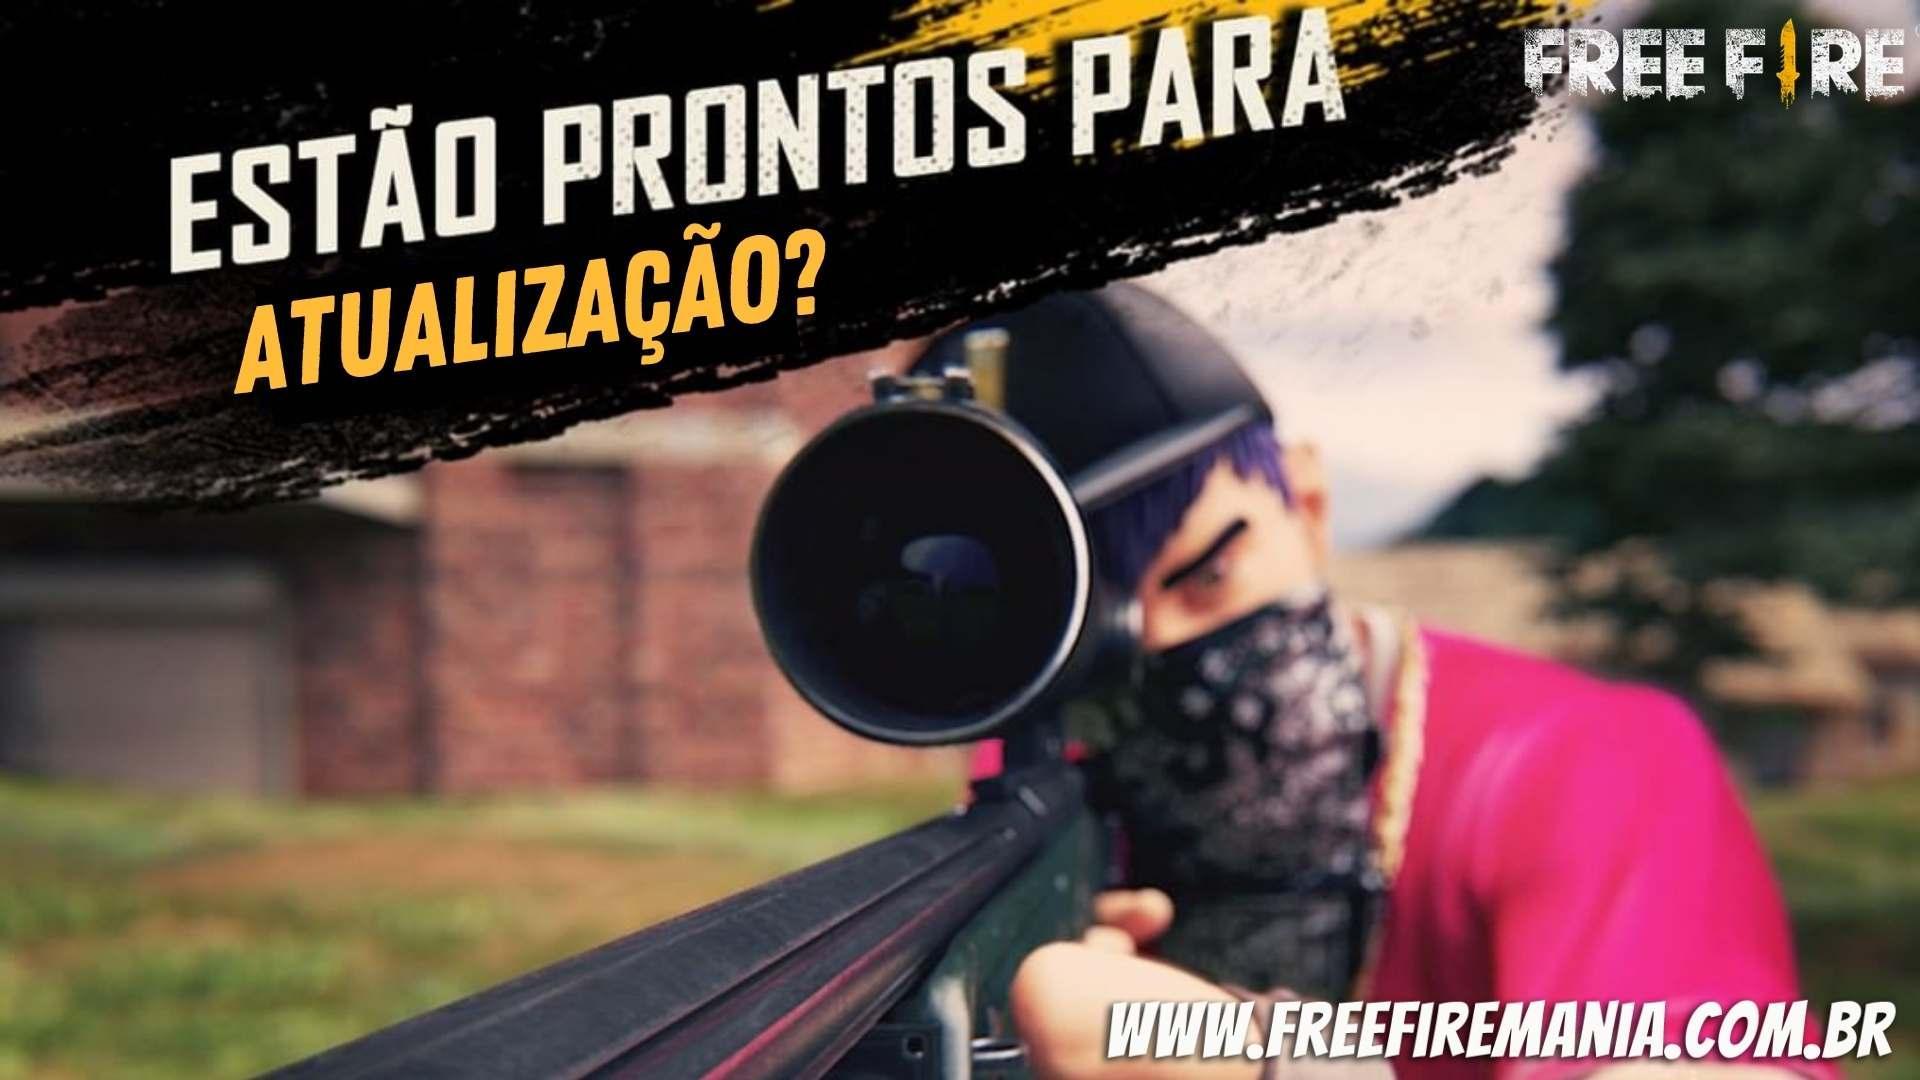 BUFFS E NERFS DE ARMAS NA NOVA ATUALIZAÇÃO DO FREE FIRE!! 